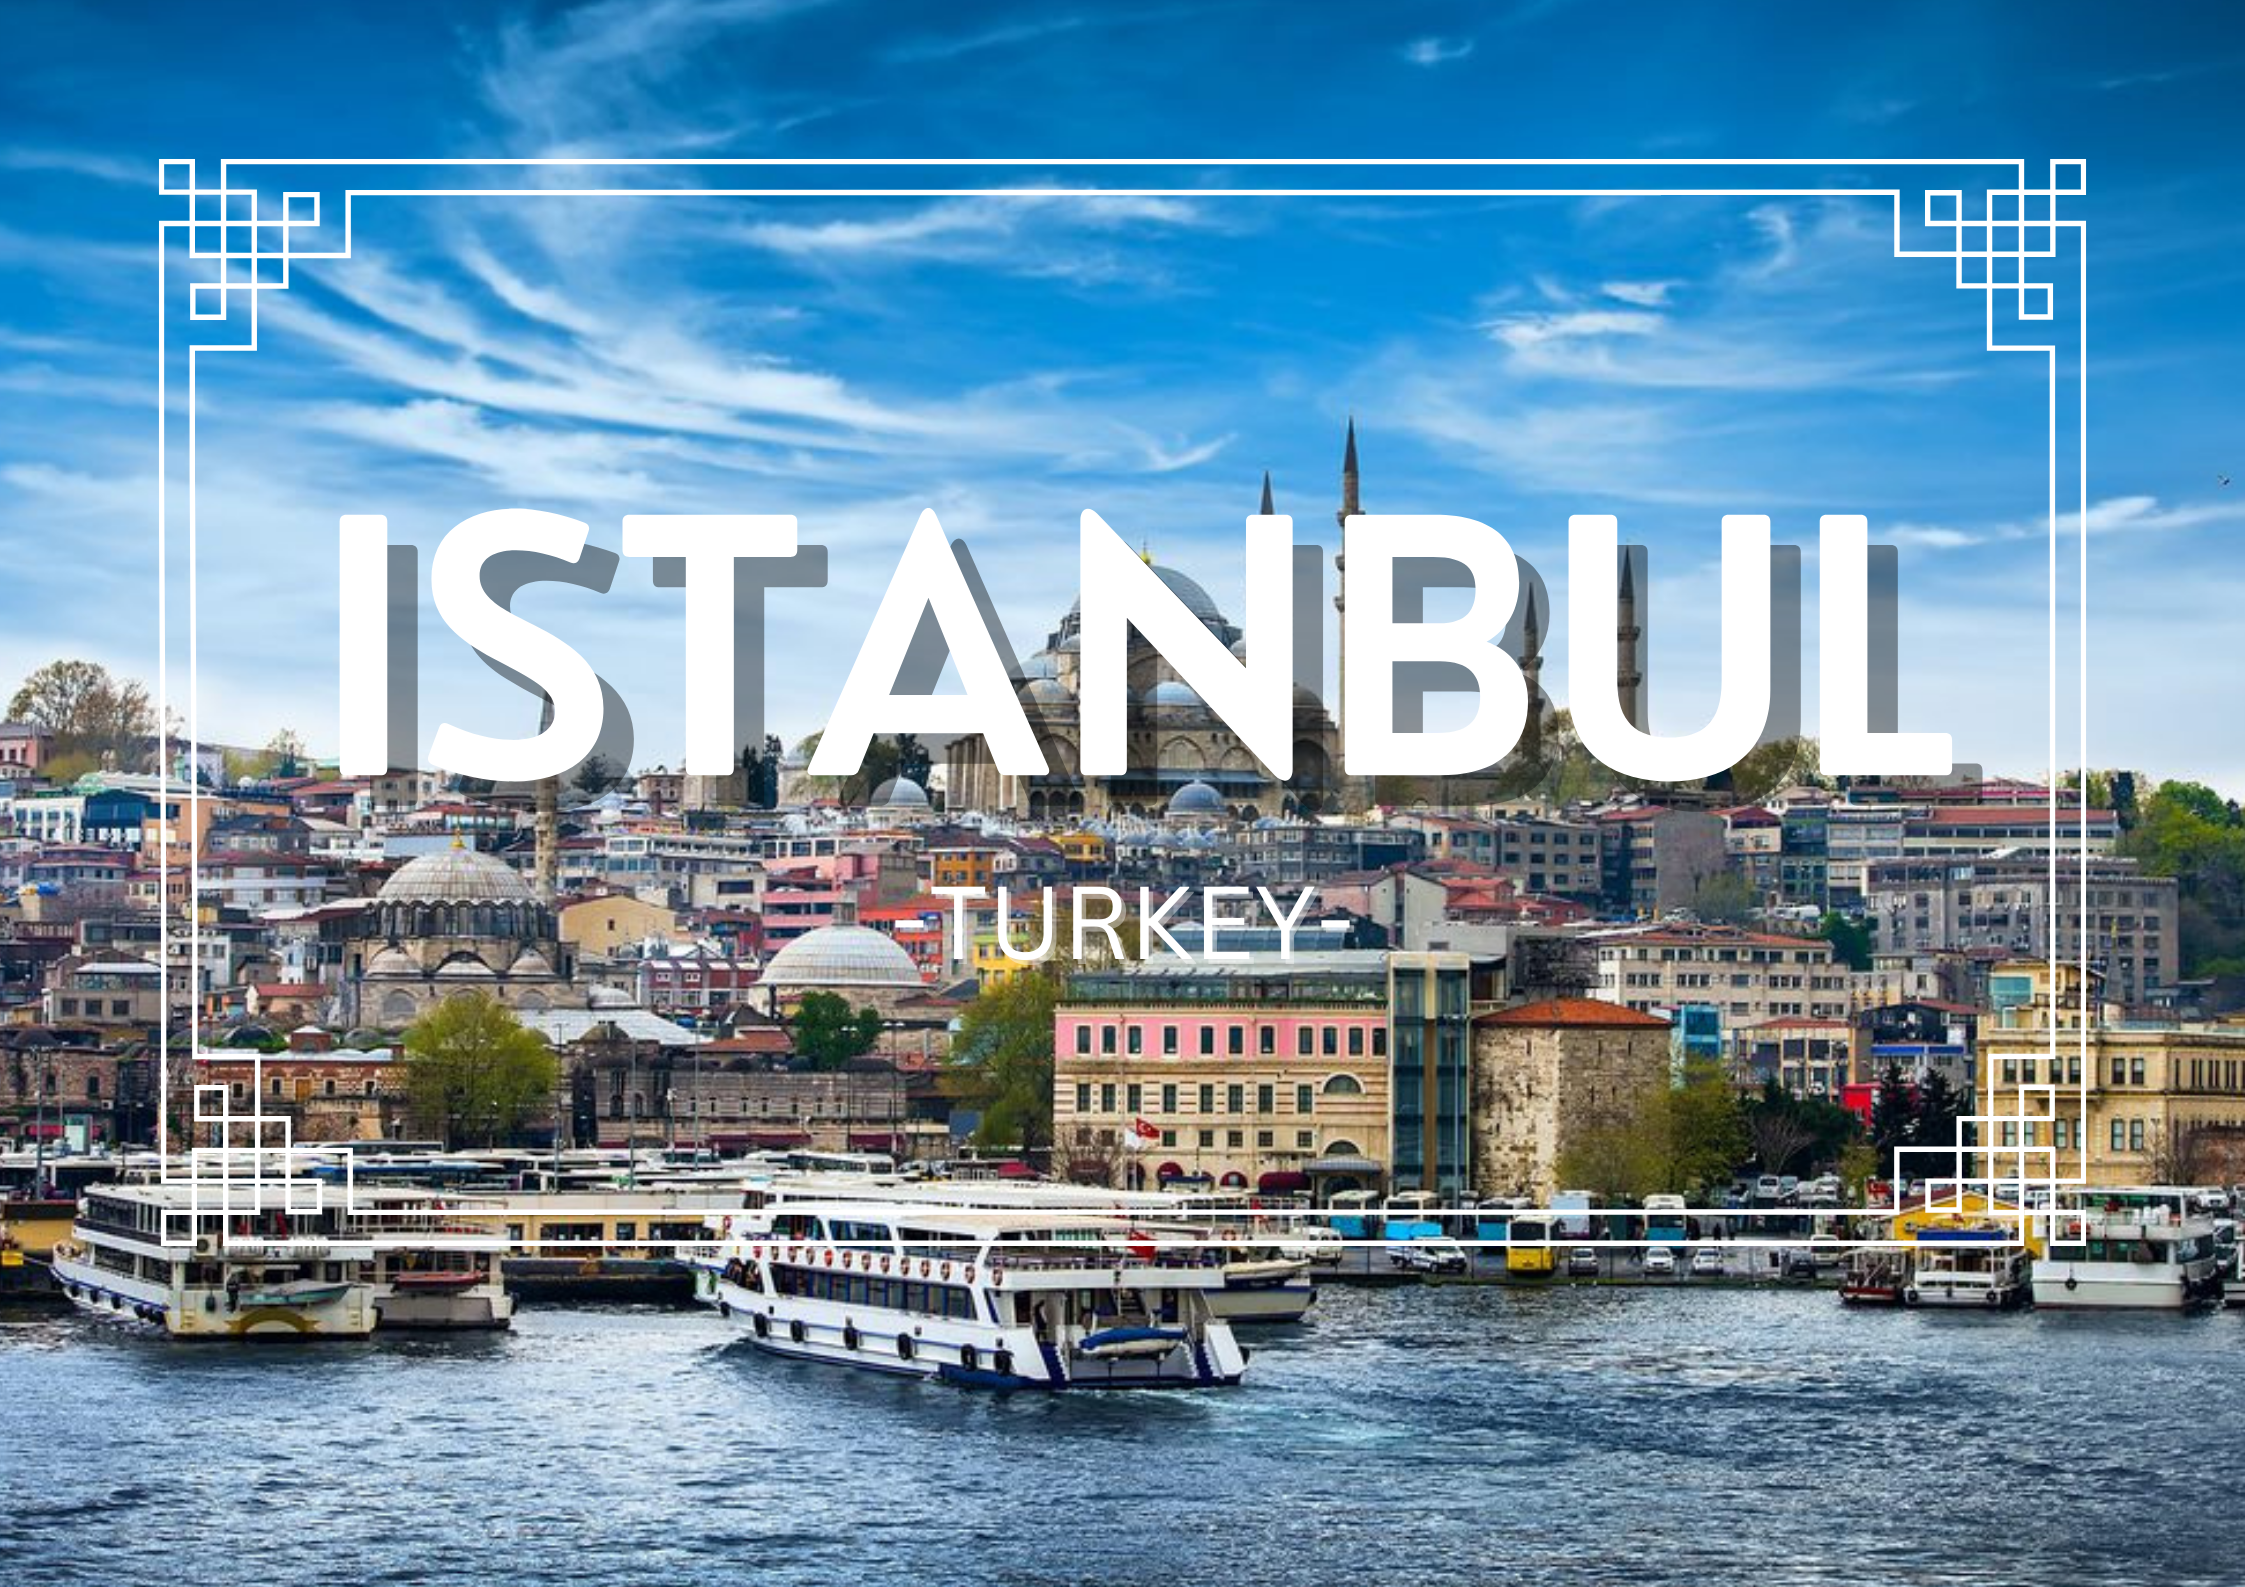 10-14 April 2023 – Istanbul, Turkey